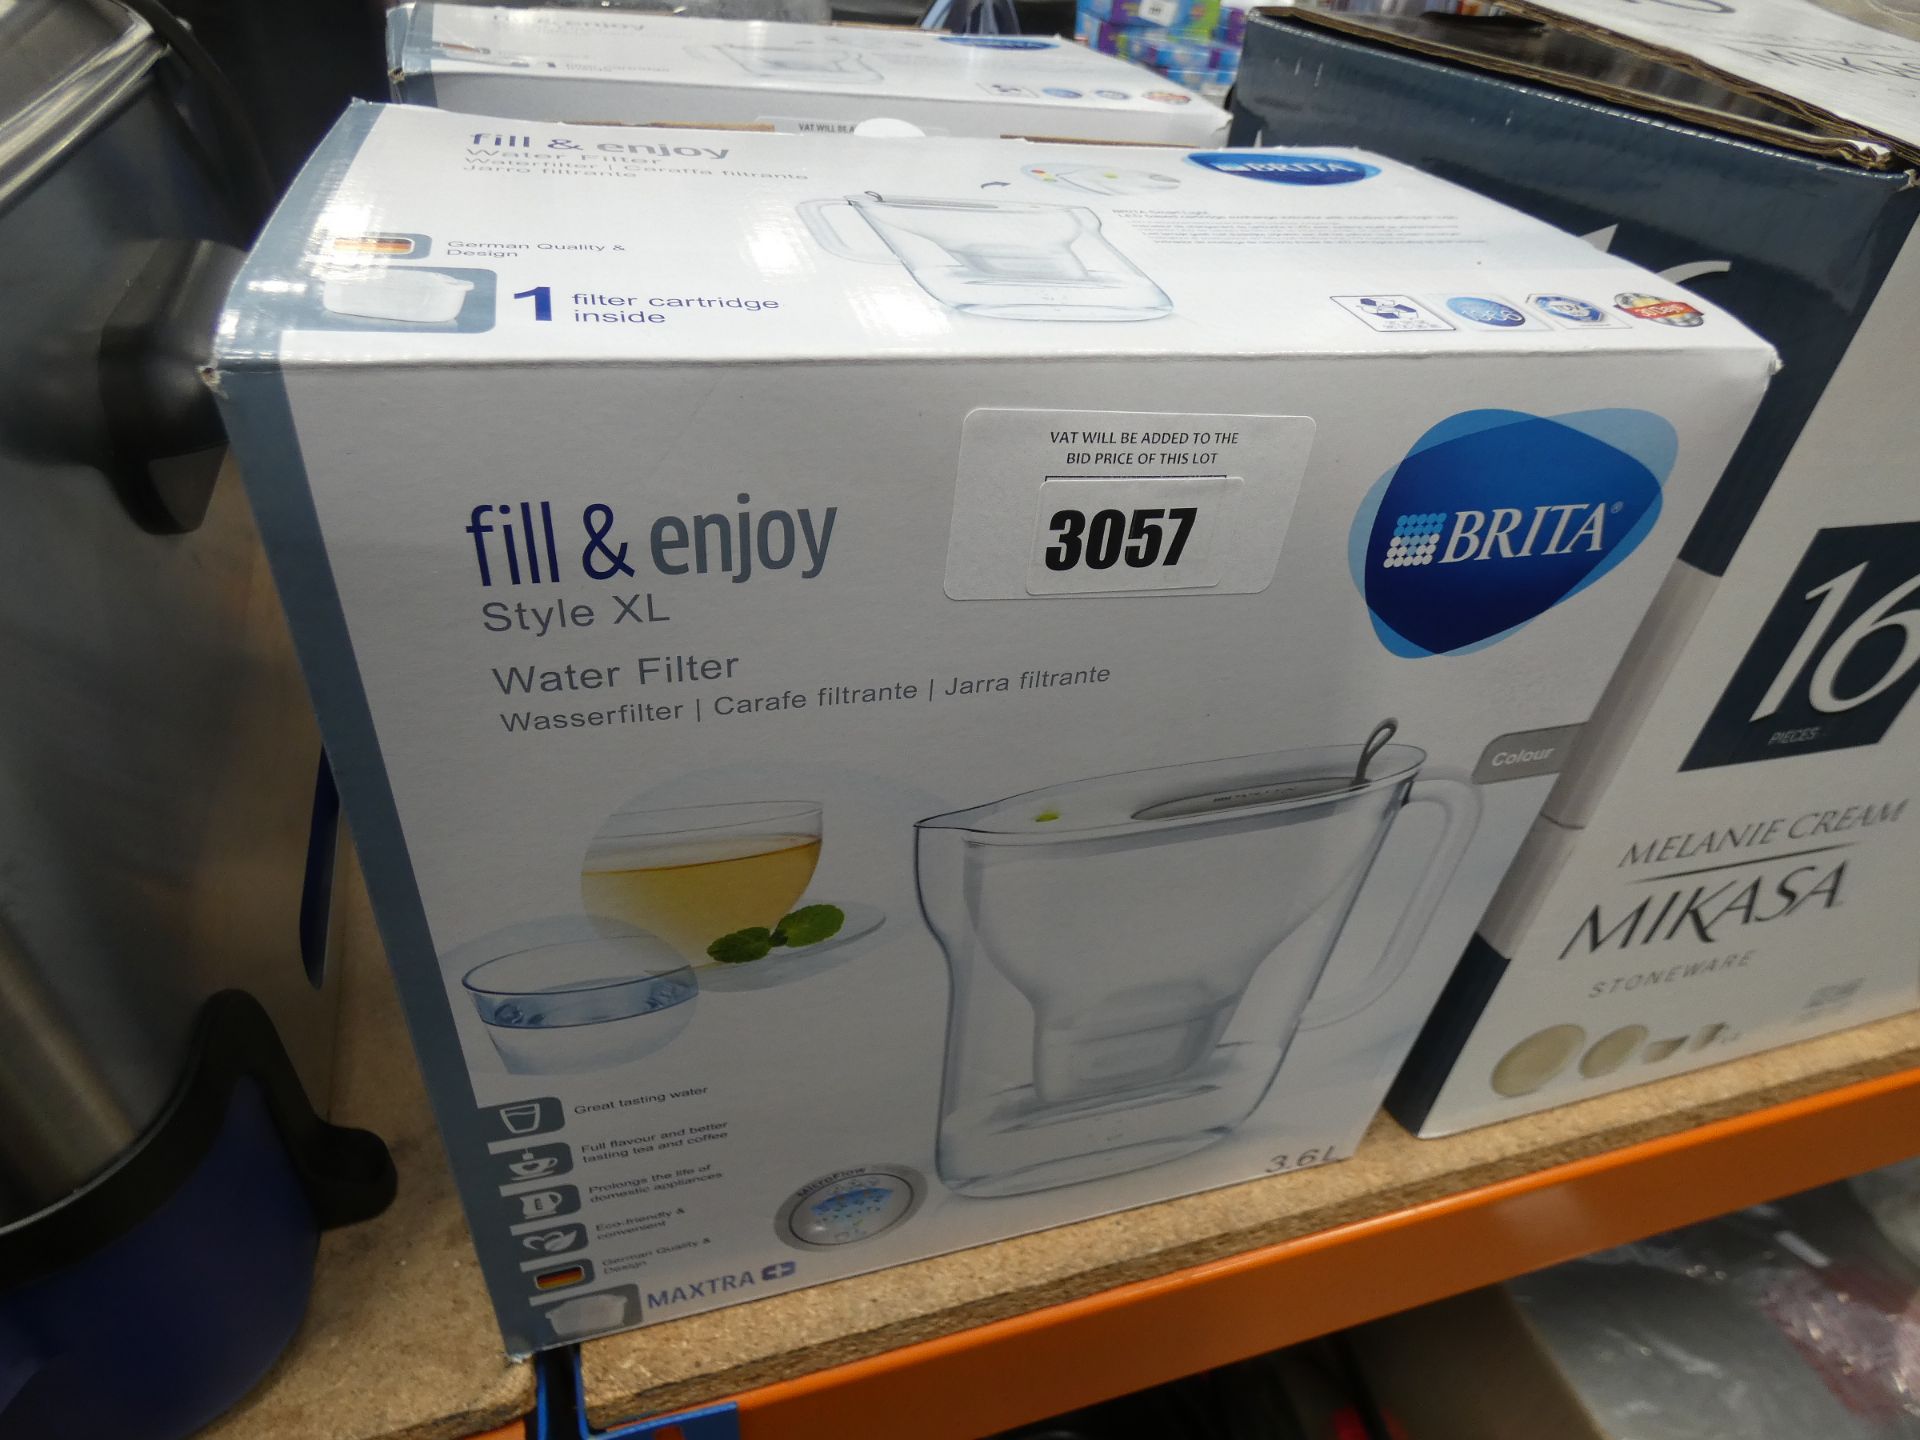 2 boxed Brita water filter jugs